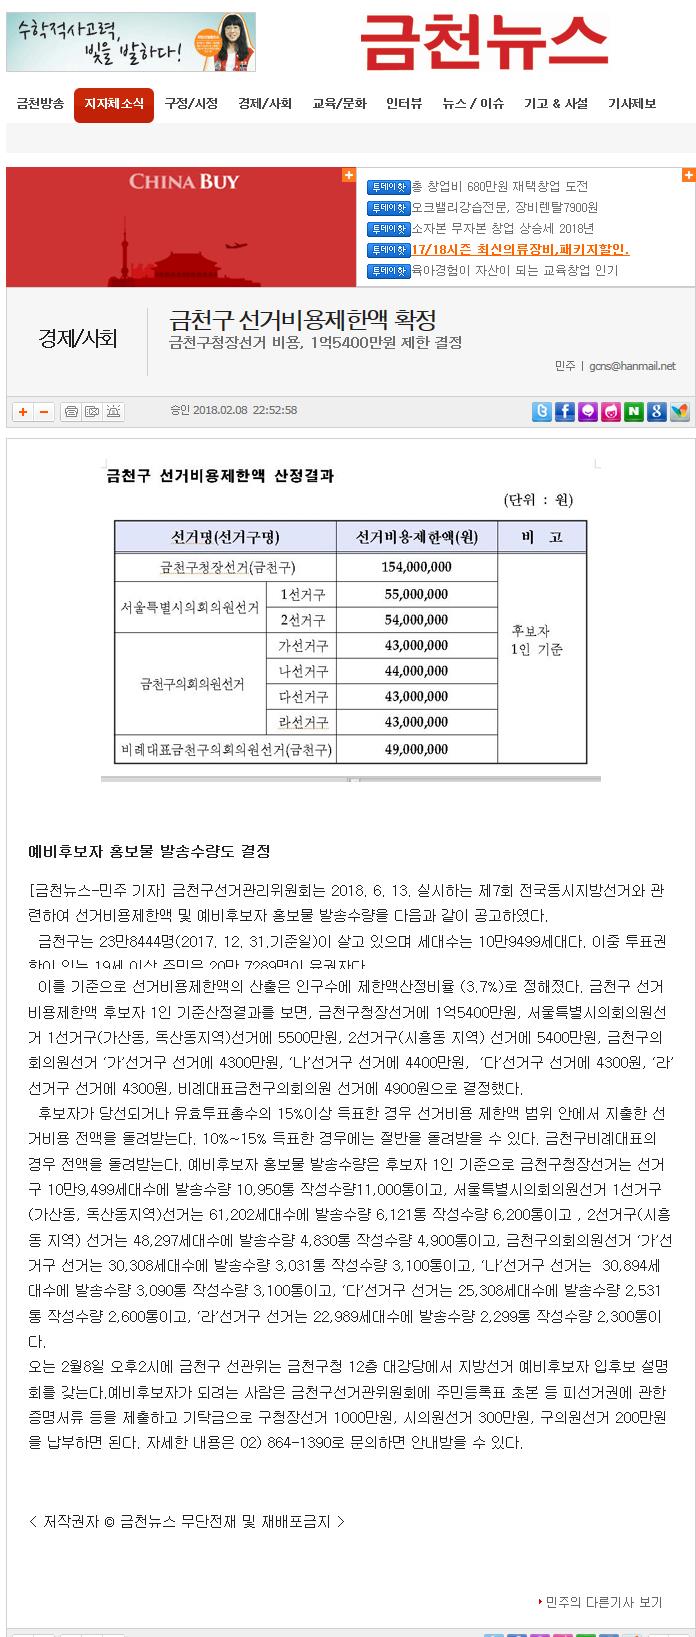 후보자별 선거비용제한액 산정 결과 기사